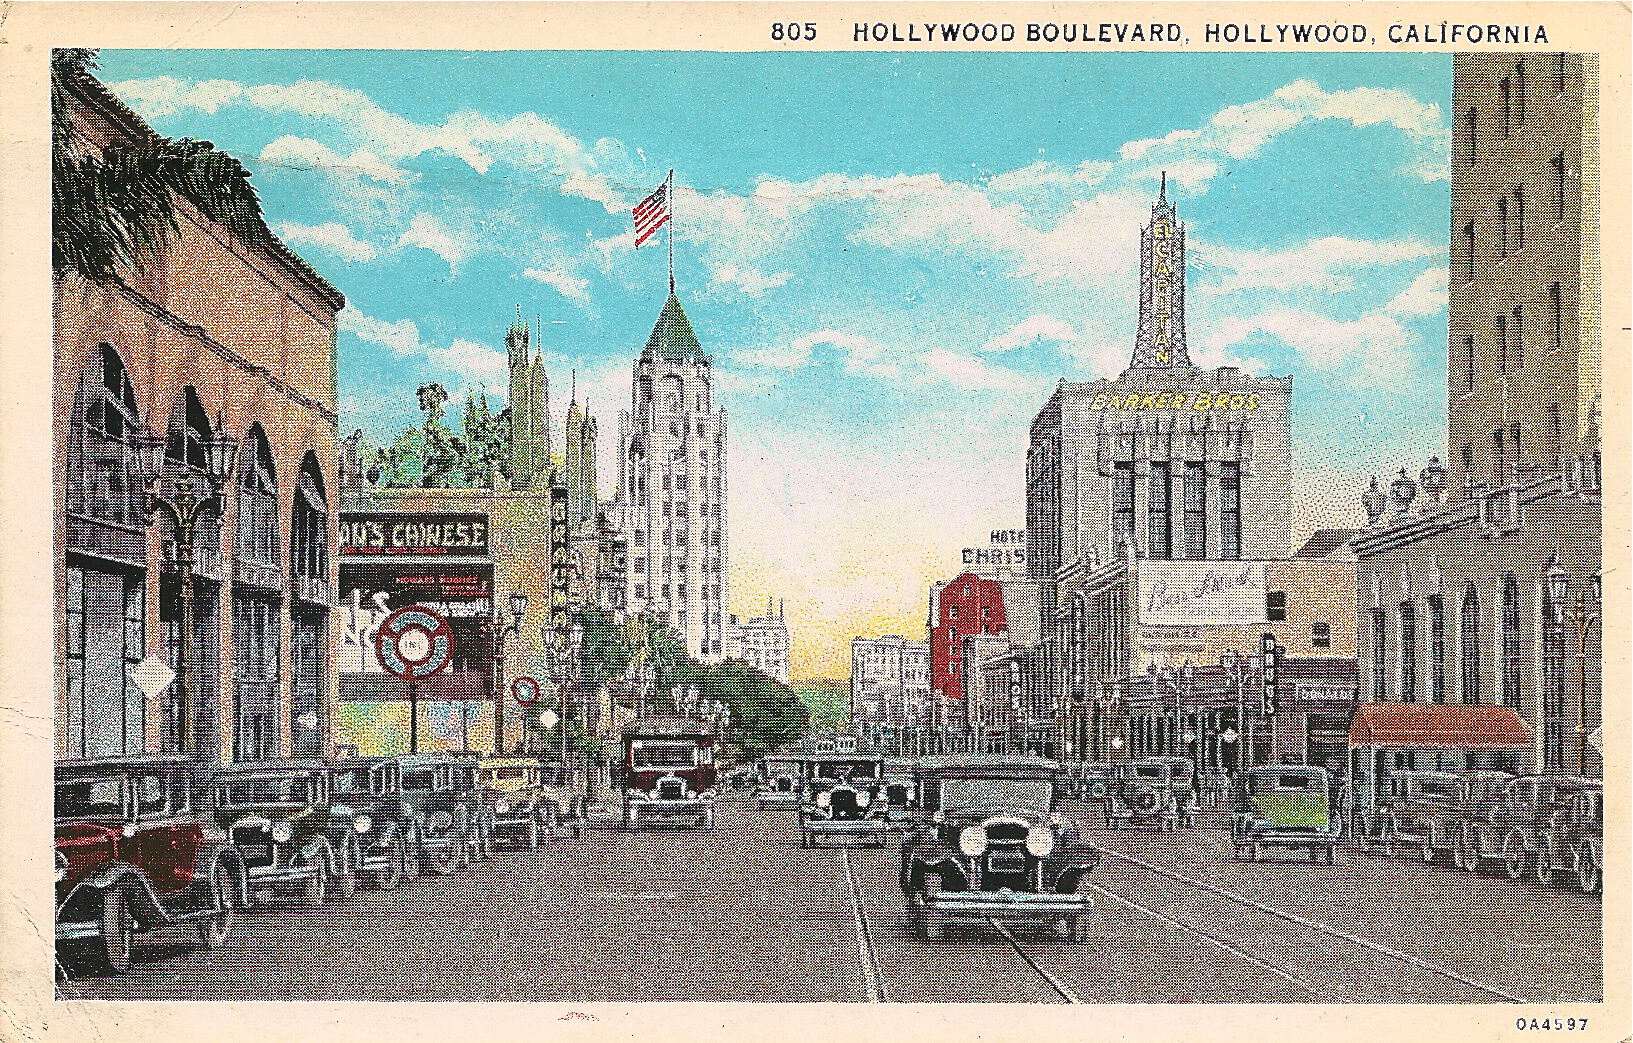 Hollywood Boulevard looking east